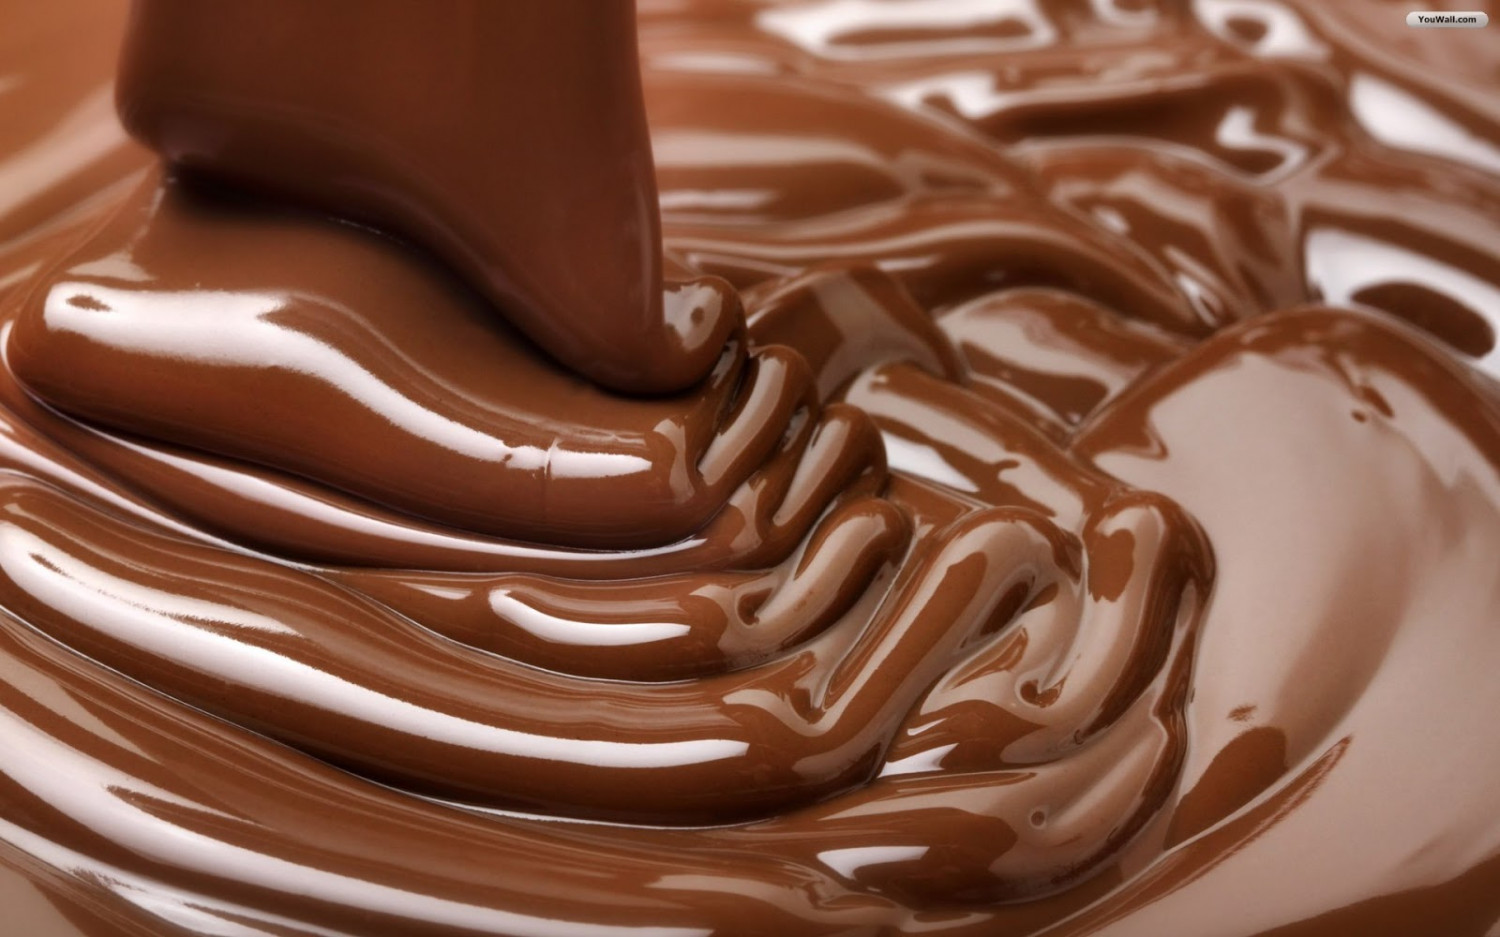 Reologia do chocolate de acordo com o padrão IOCC